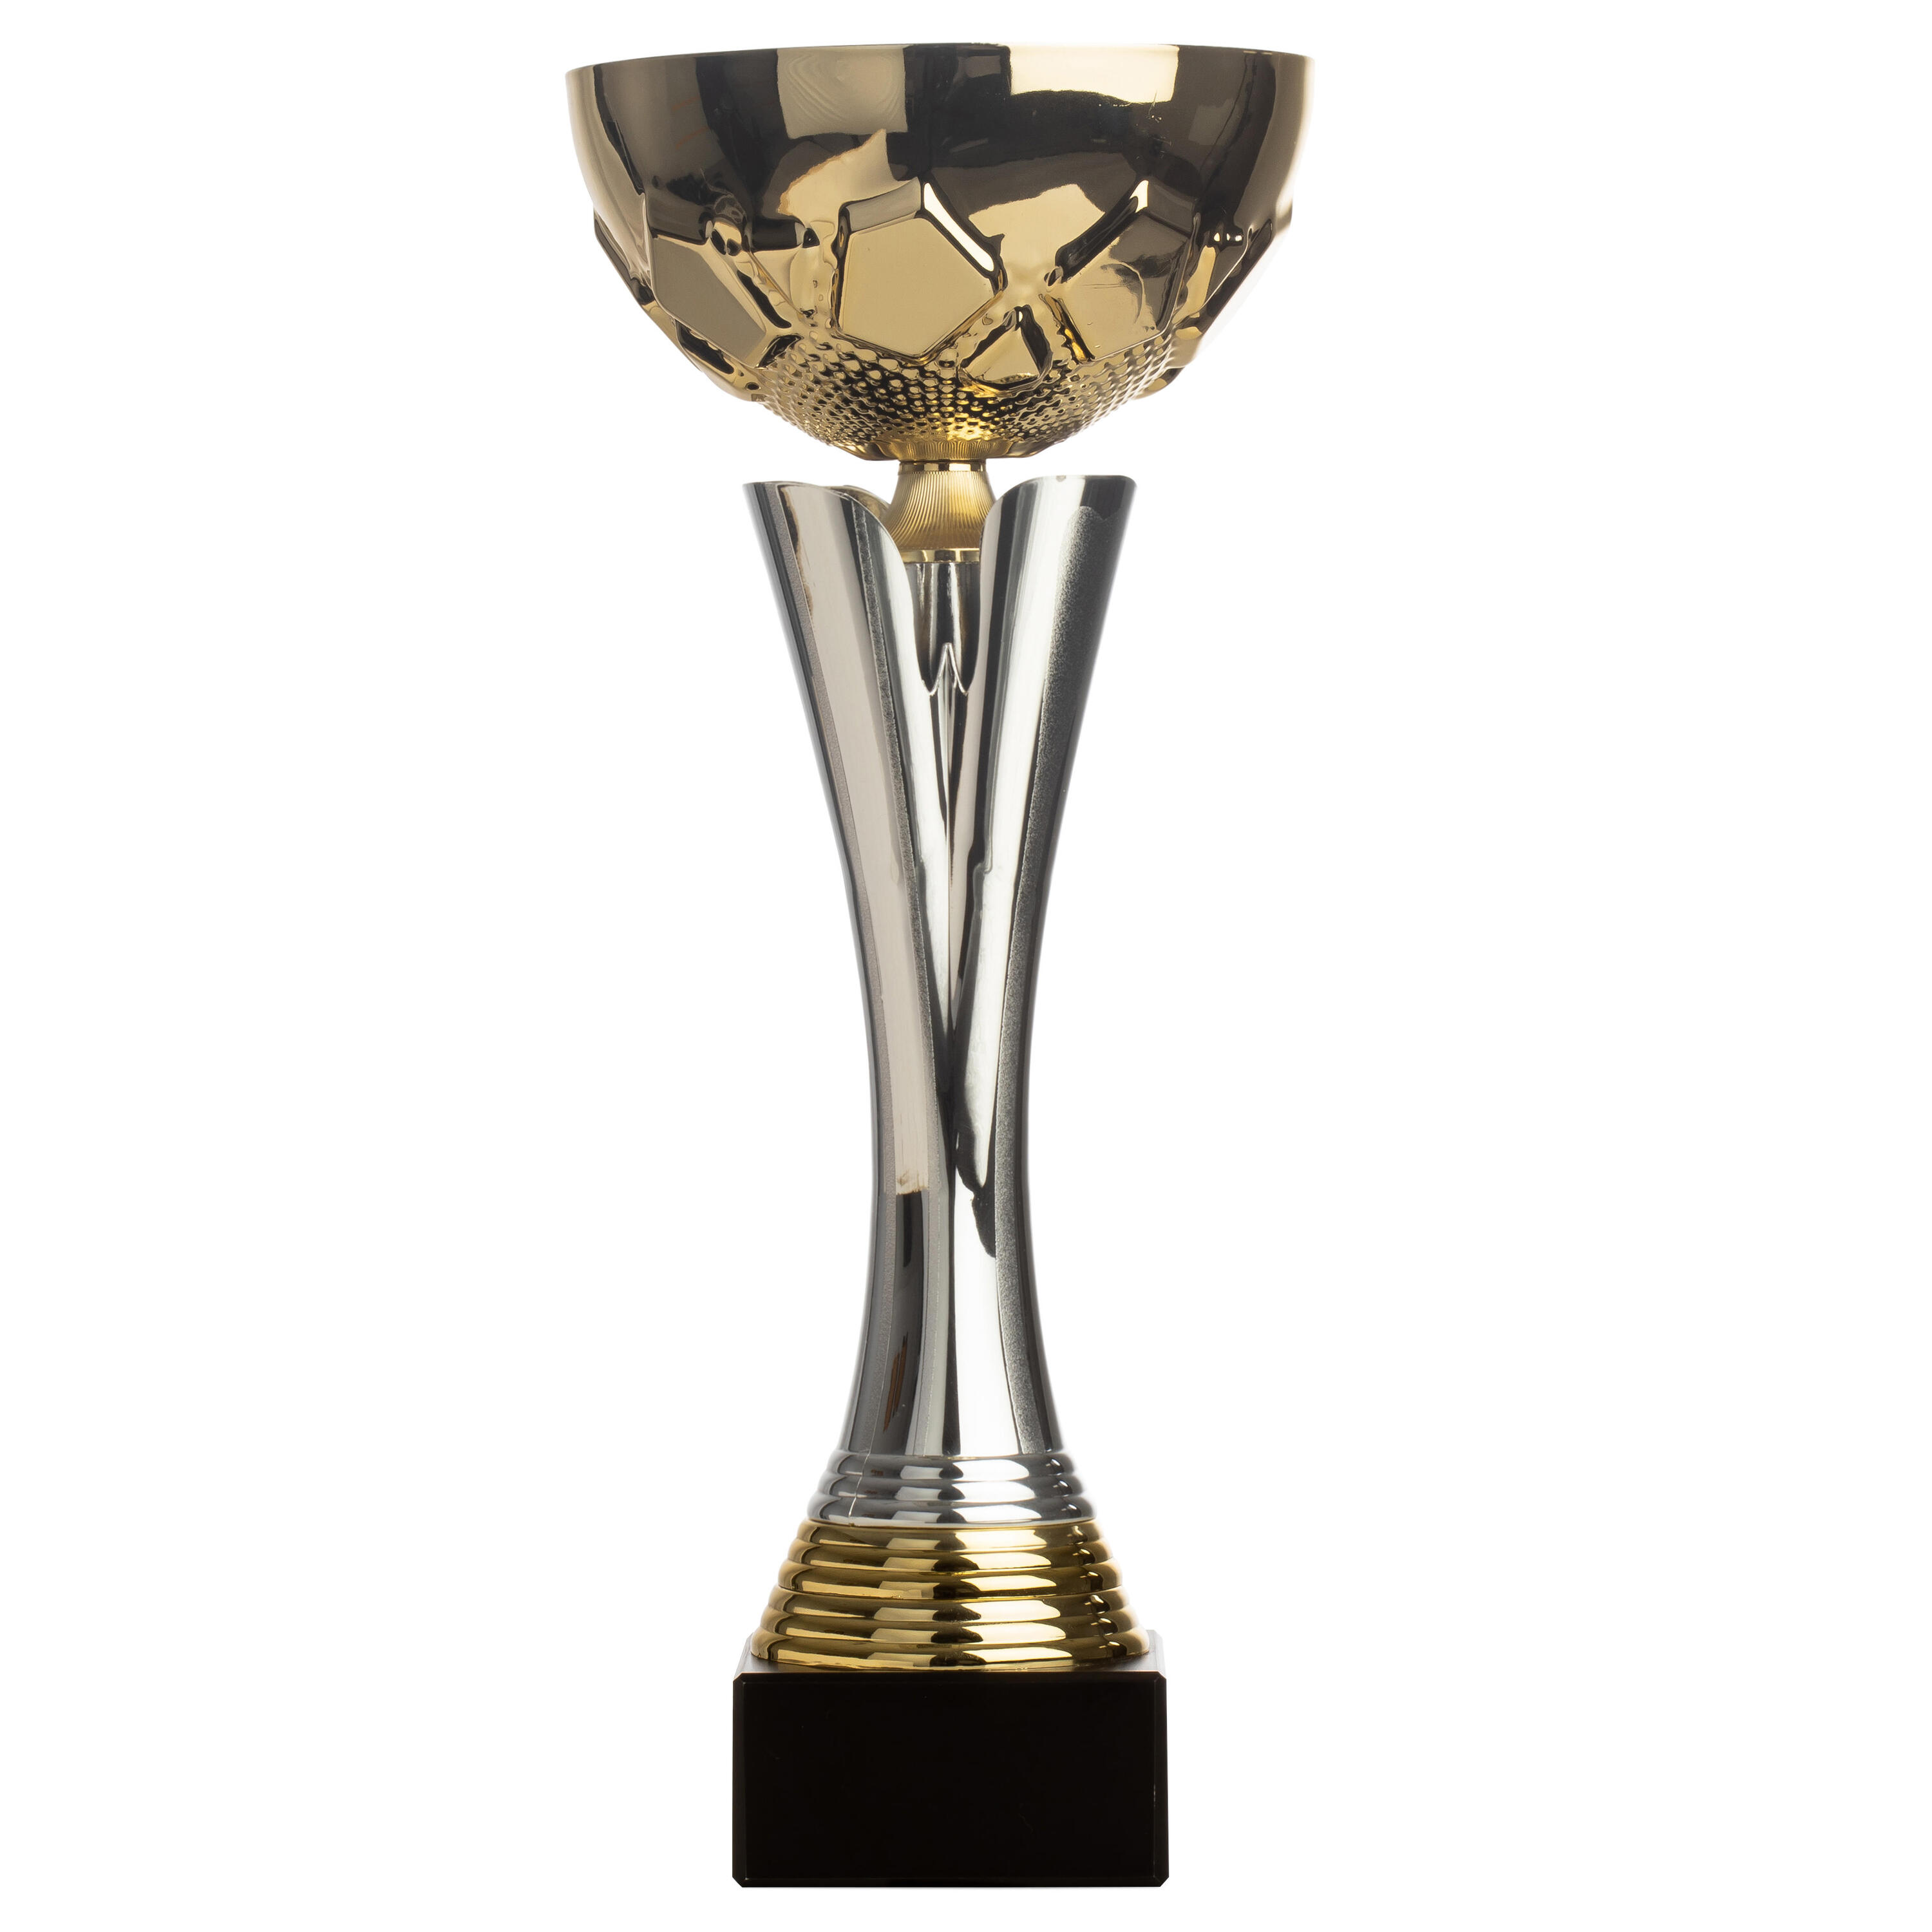 TROPHÉE VAINQUEURS C535 Cup 32cm - Gold/Silver